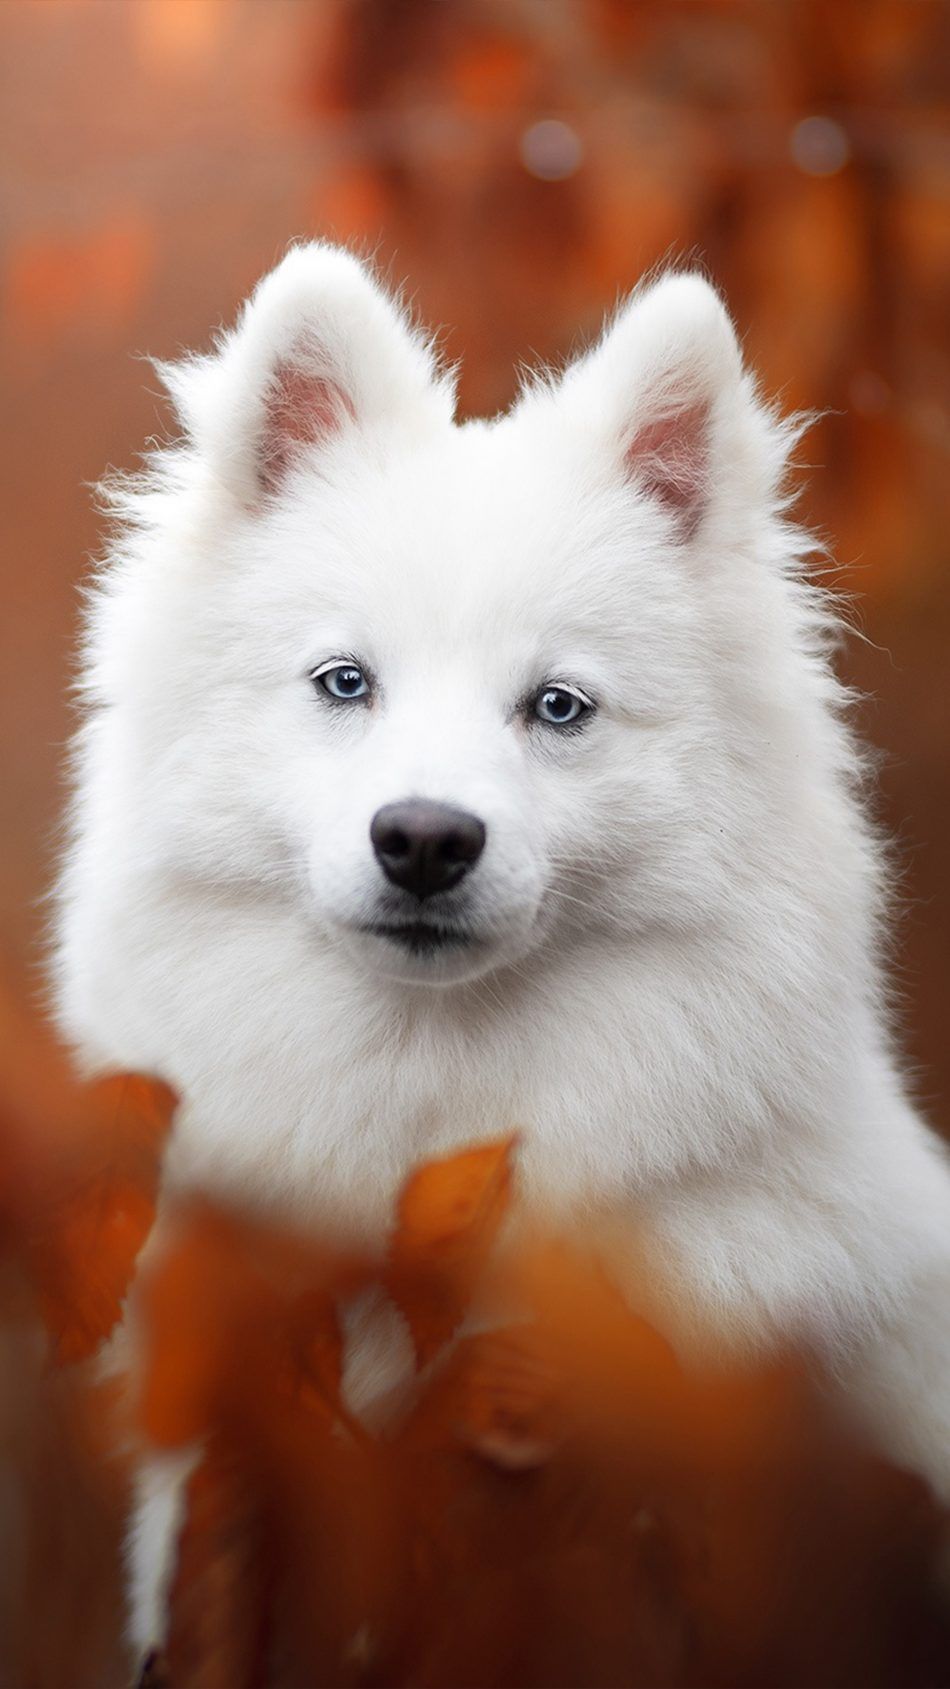 عکس فوق العاده زیبا از سگ سفید و خندان با کیفیت بالا